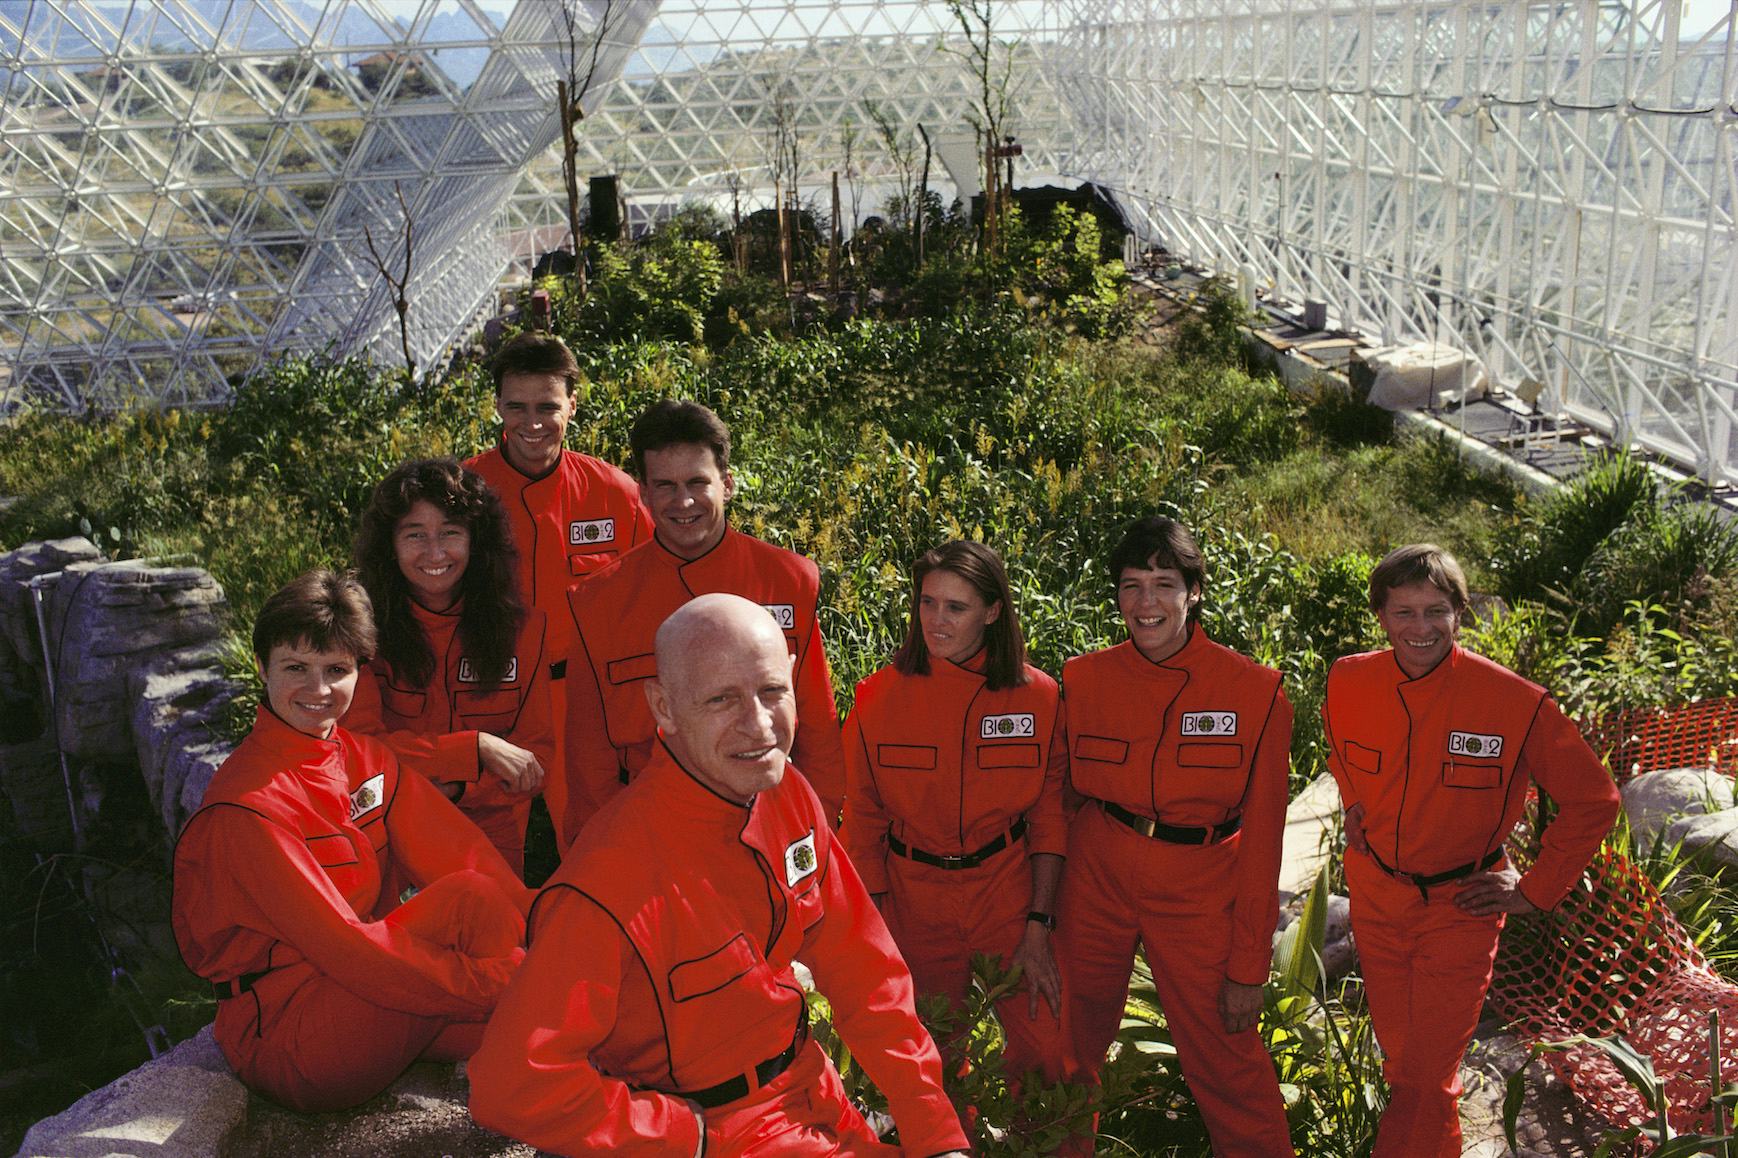 Spaceship earth, de openingsfilm van het AFFR 2020 over Biosphere 2 Project 